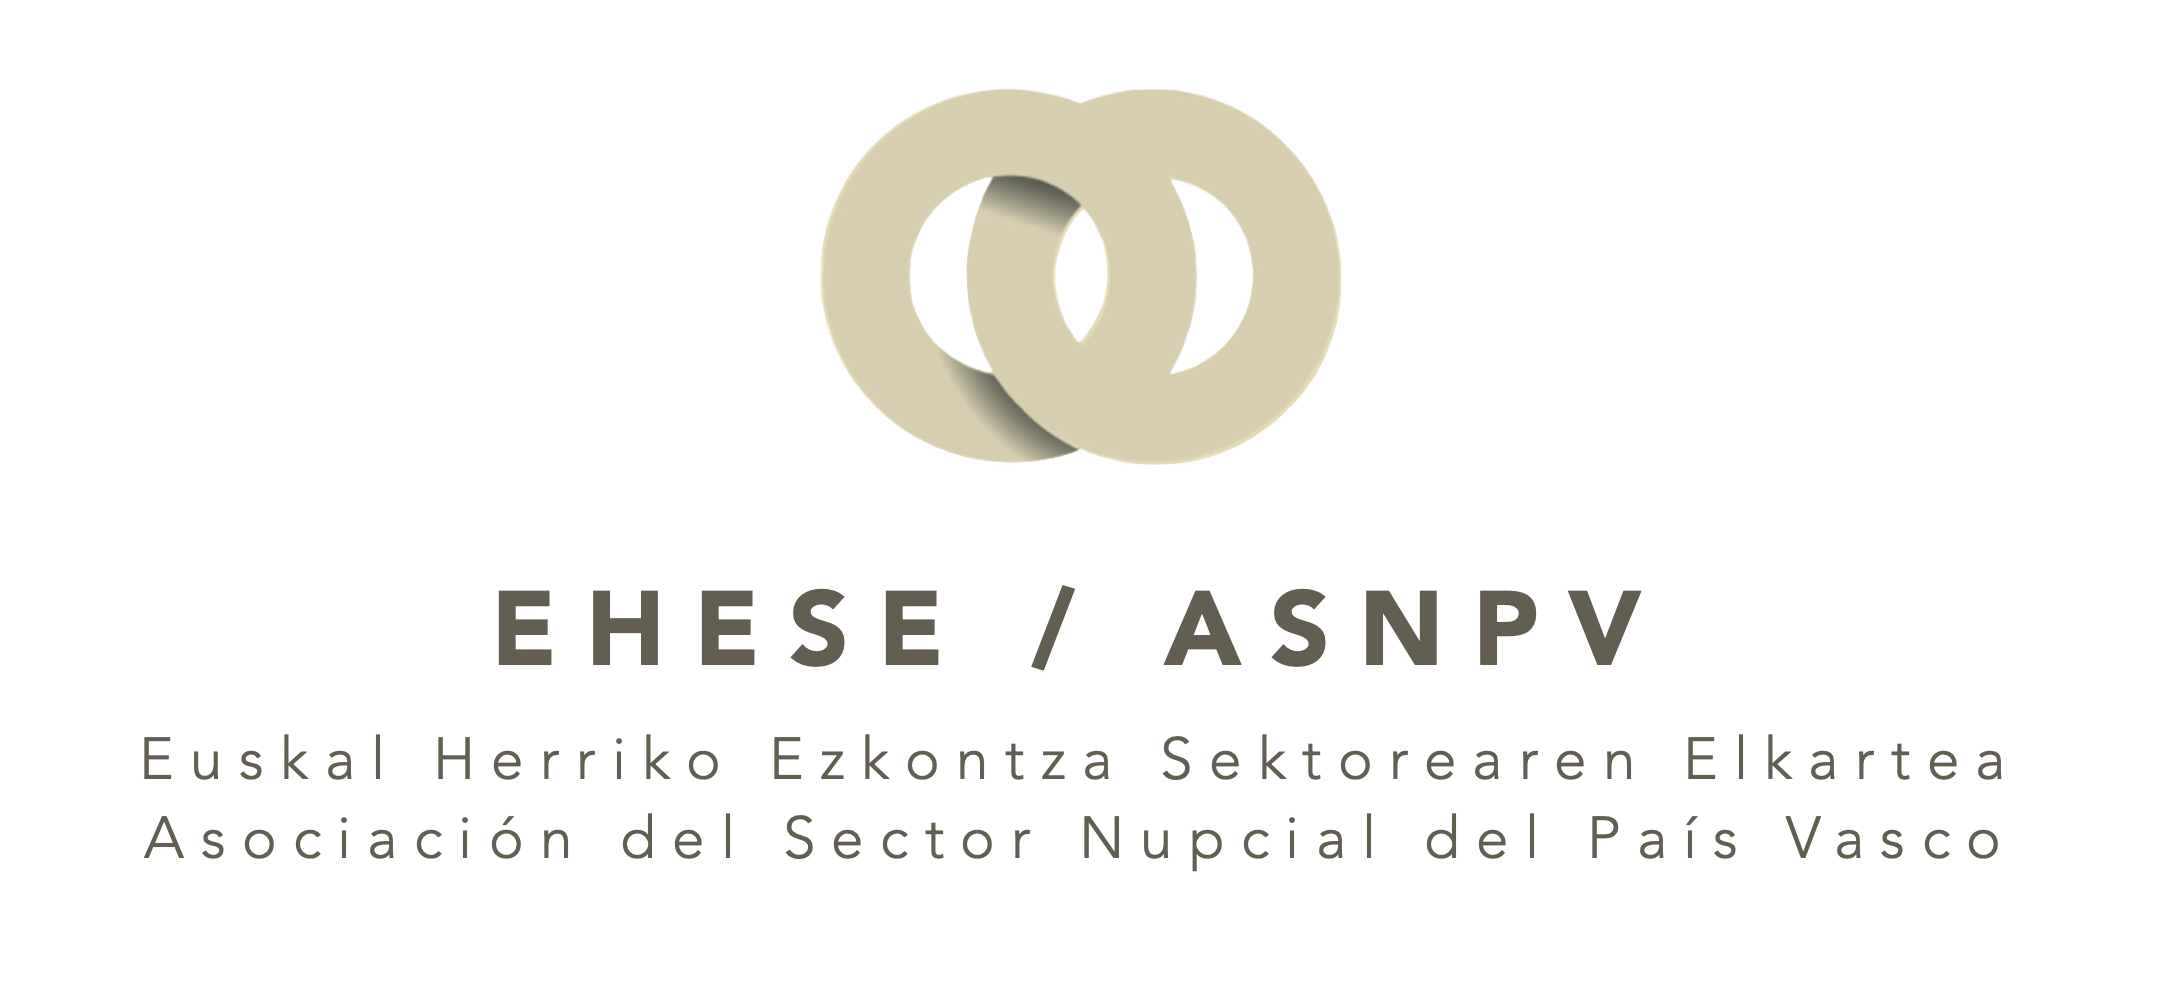 Fondo blanco con logo color crema y letras marrón oscuro de la Asociación del Sector Nupcial del País Vasco